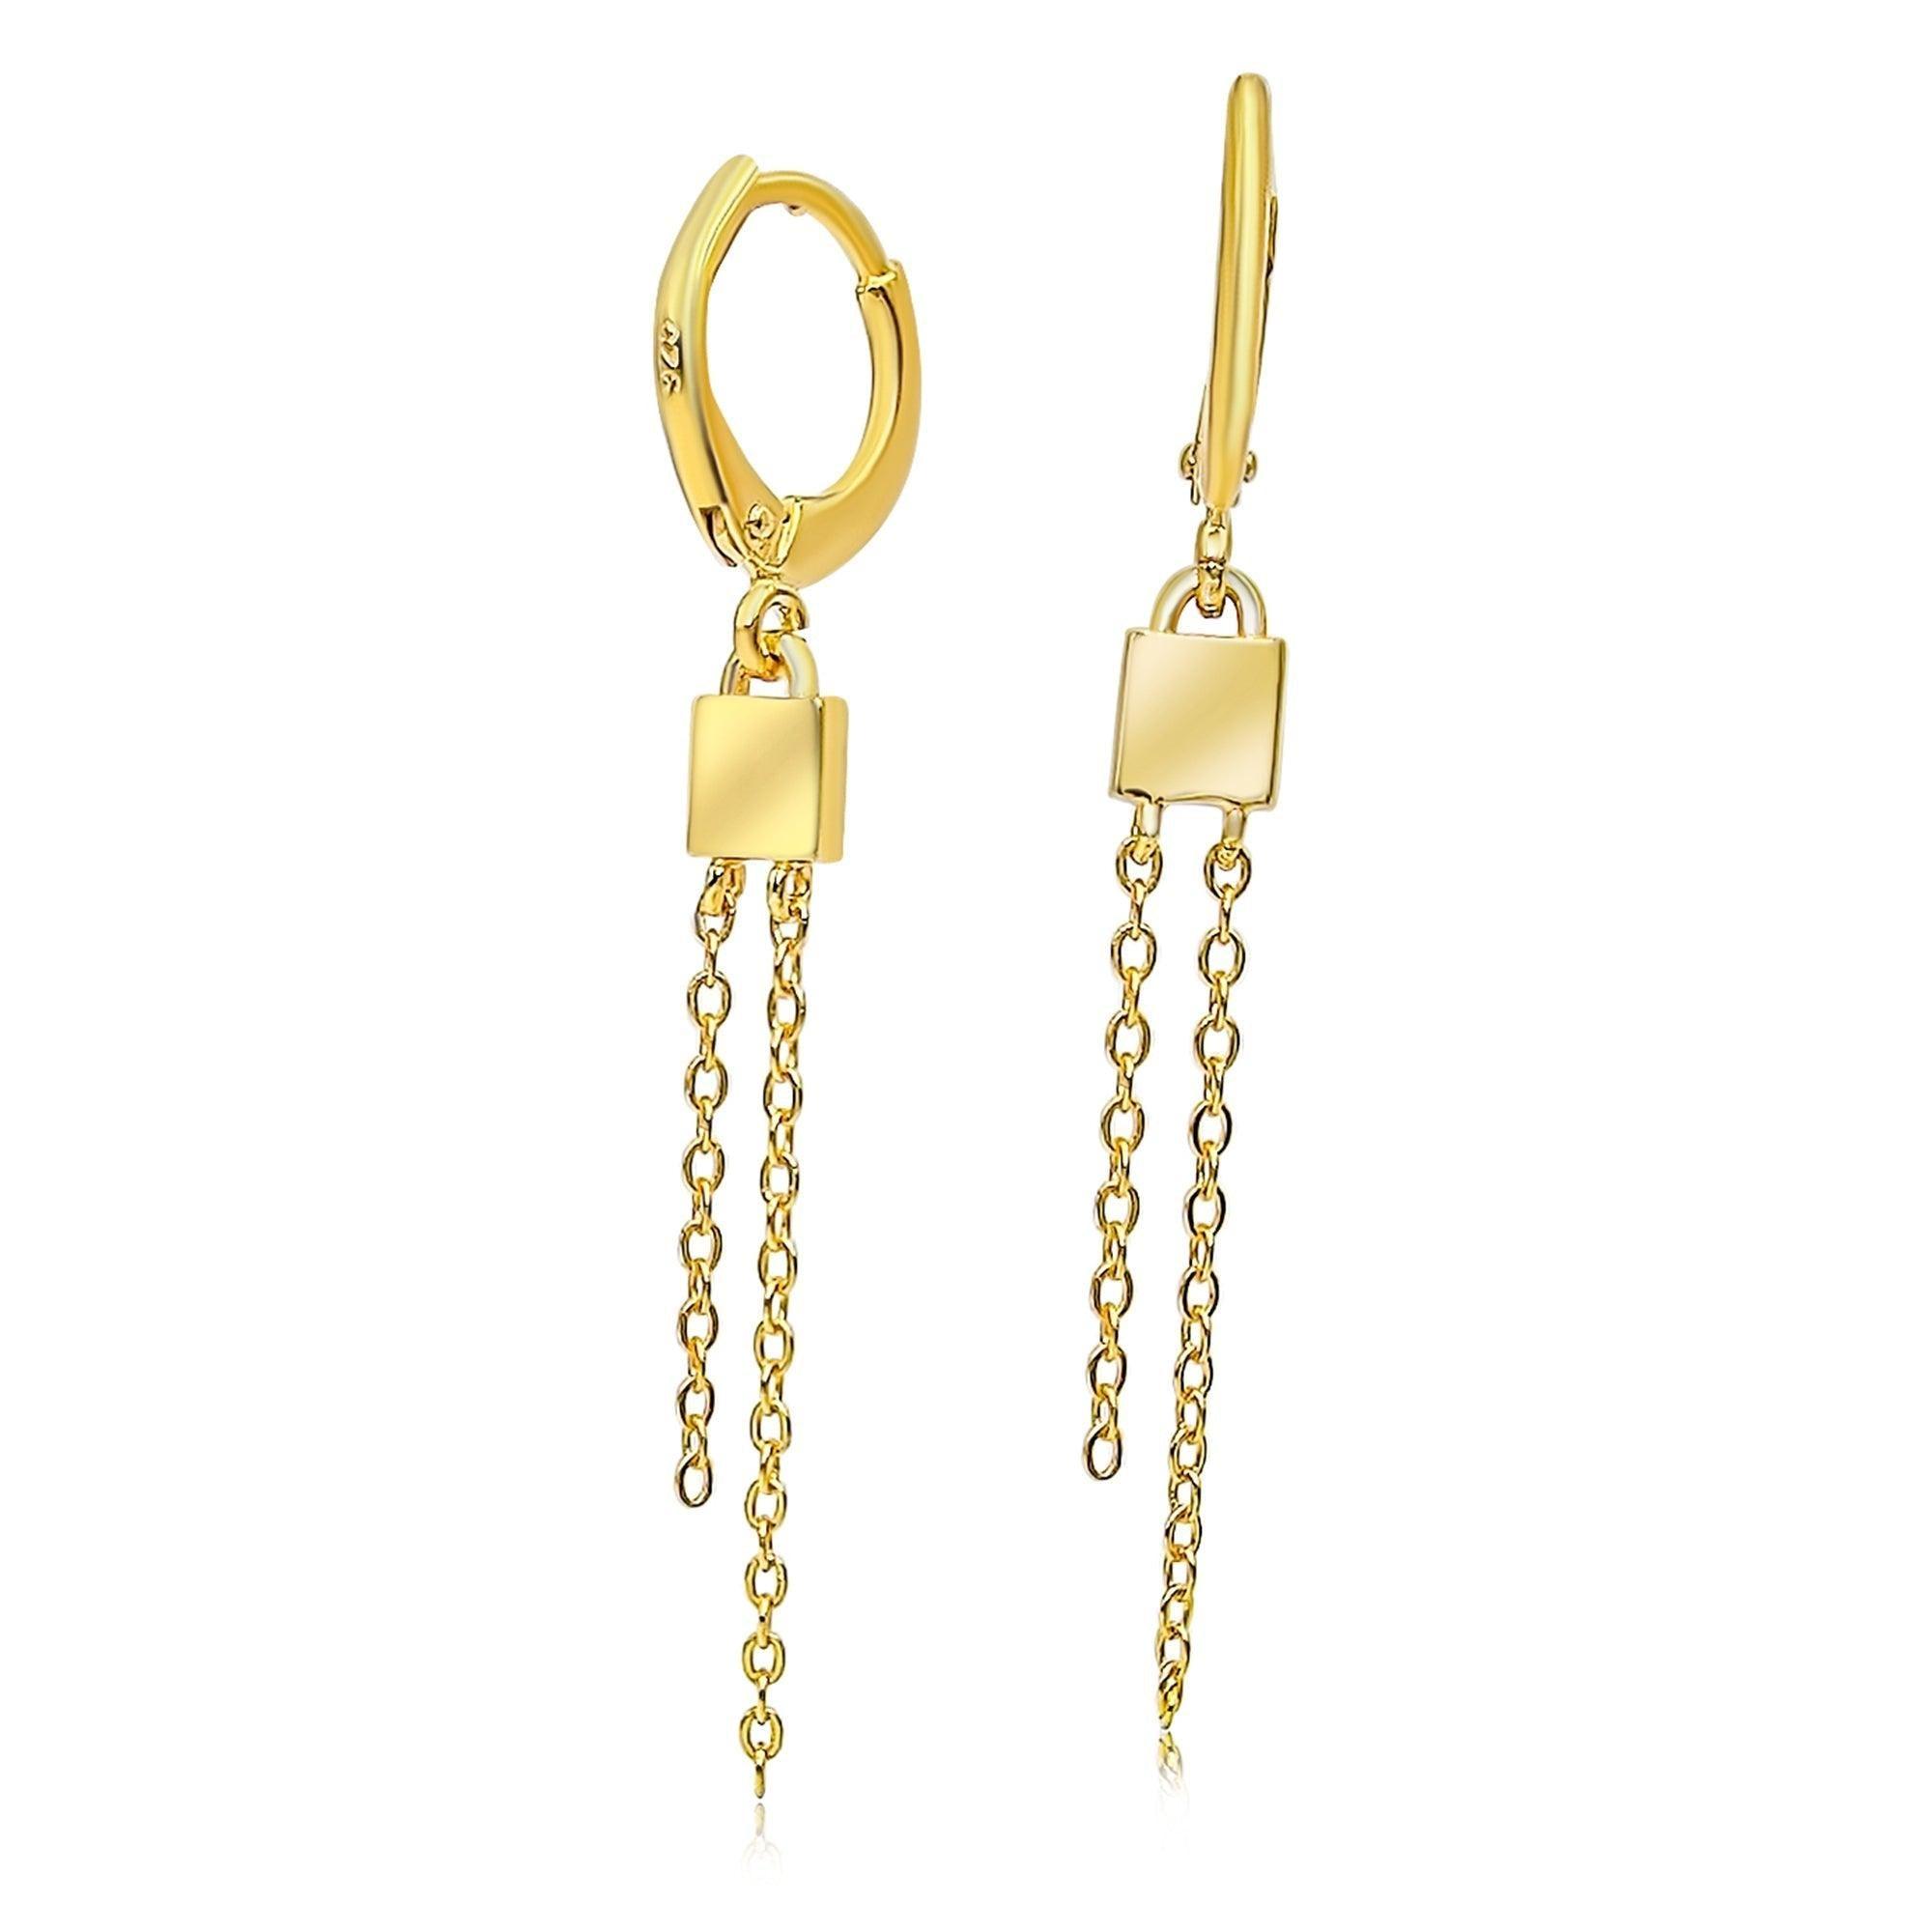 Double Chain Drop Earrings - Uniquelan Jewelry